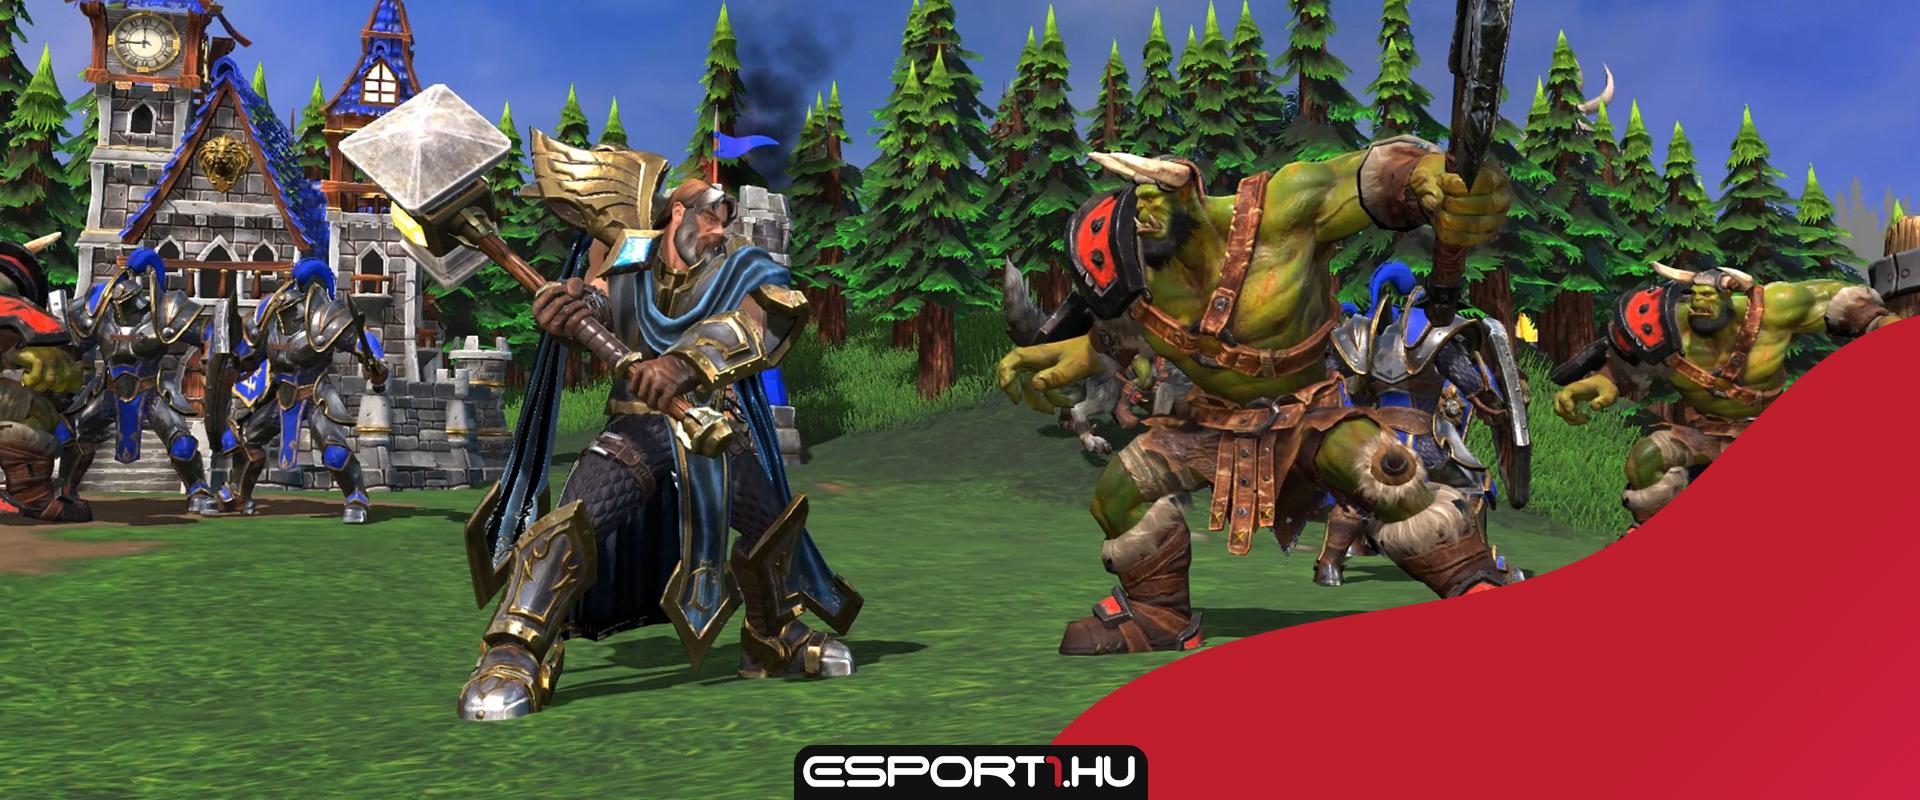 Két, a Warcraft-világában játszódó mobiljátékon is dolgozik a Blizzard